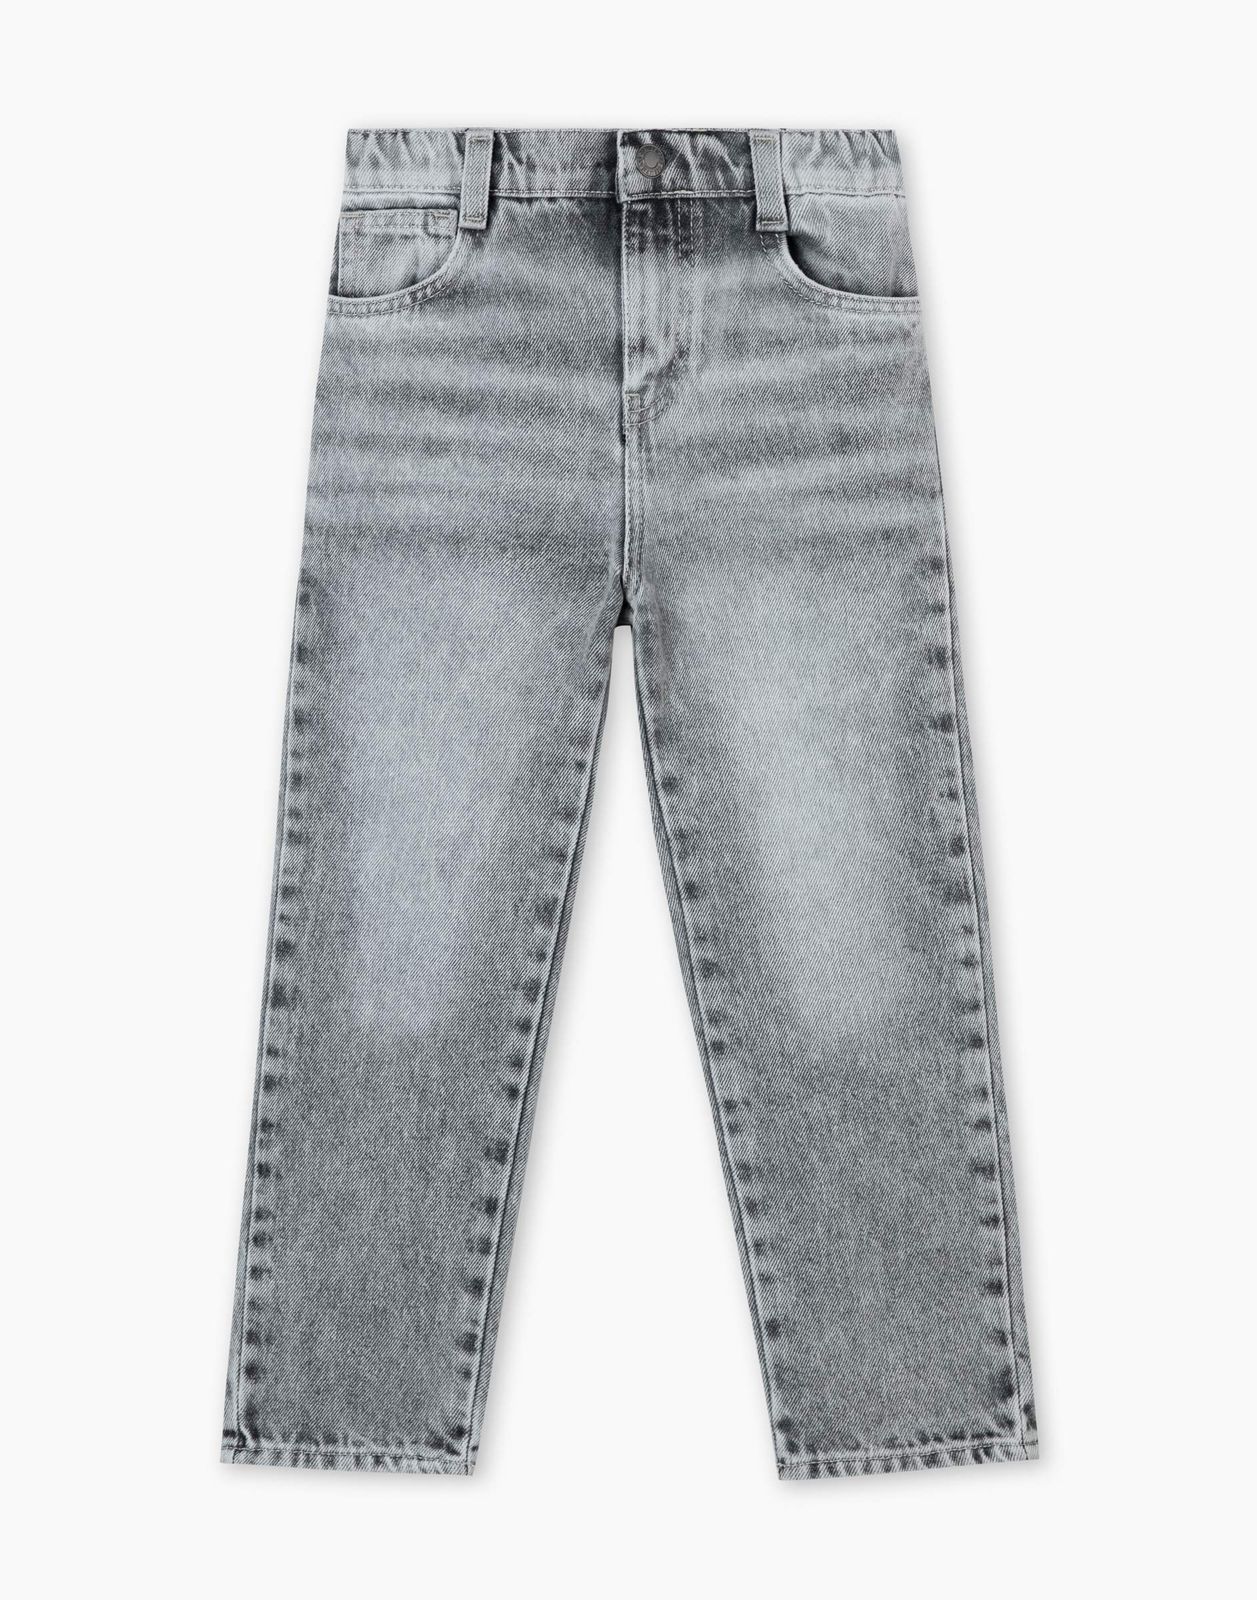 Джинсы детские Gloria Jeans BJN015300, серый/серый-лайтайс/, 110